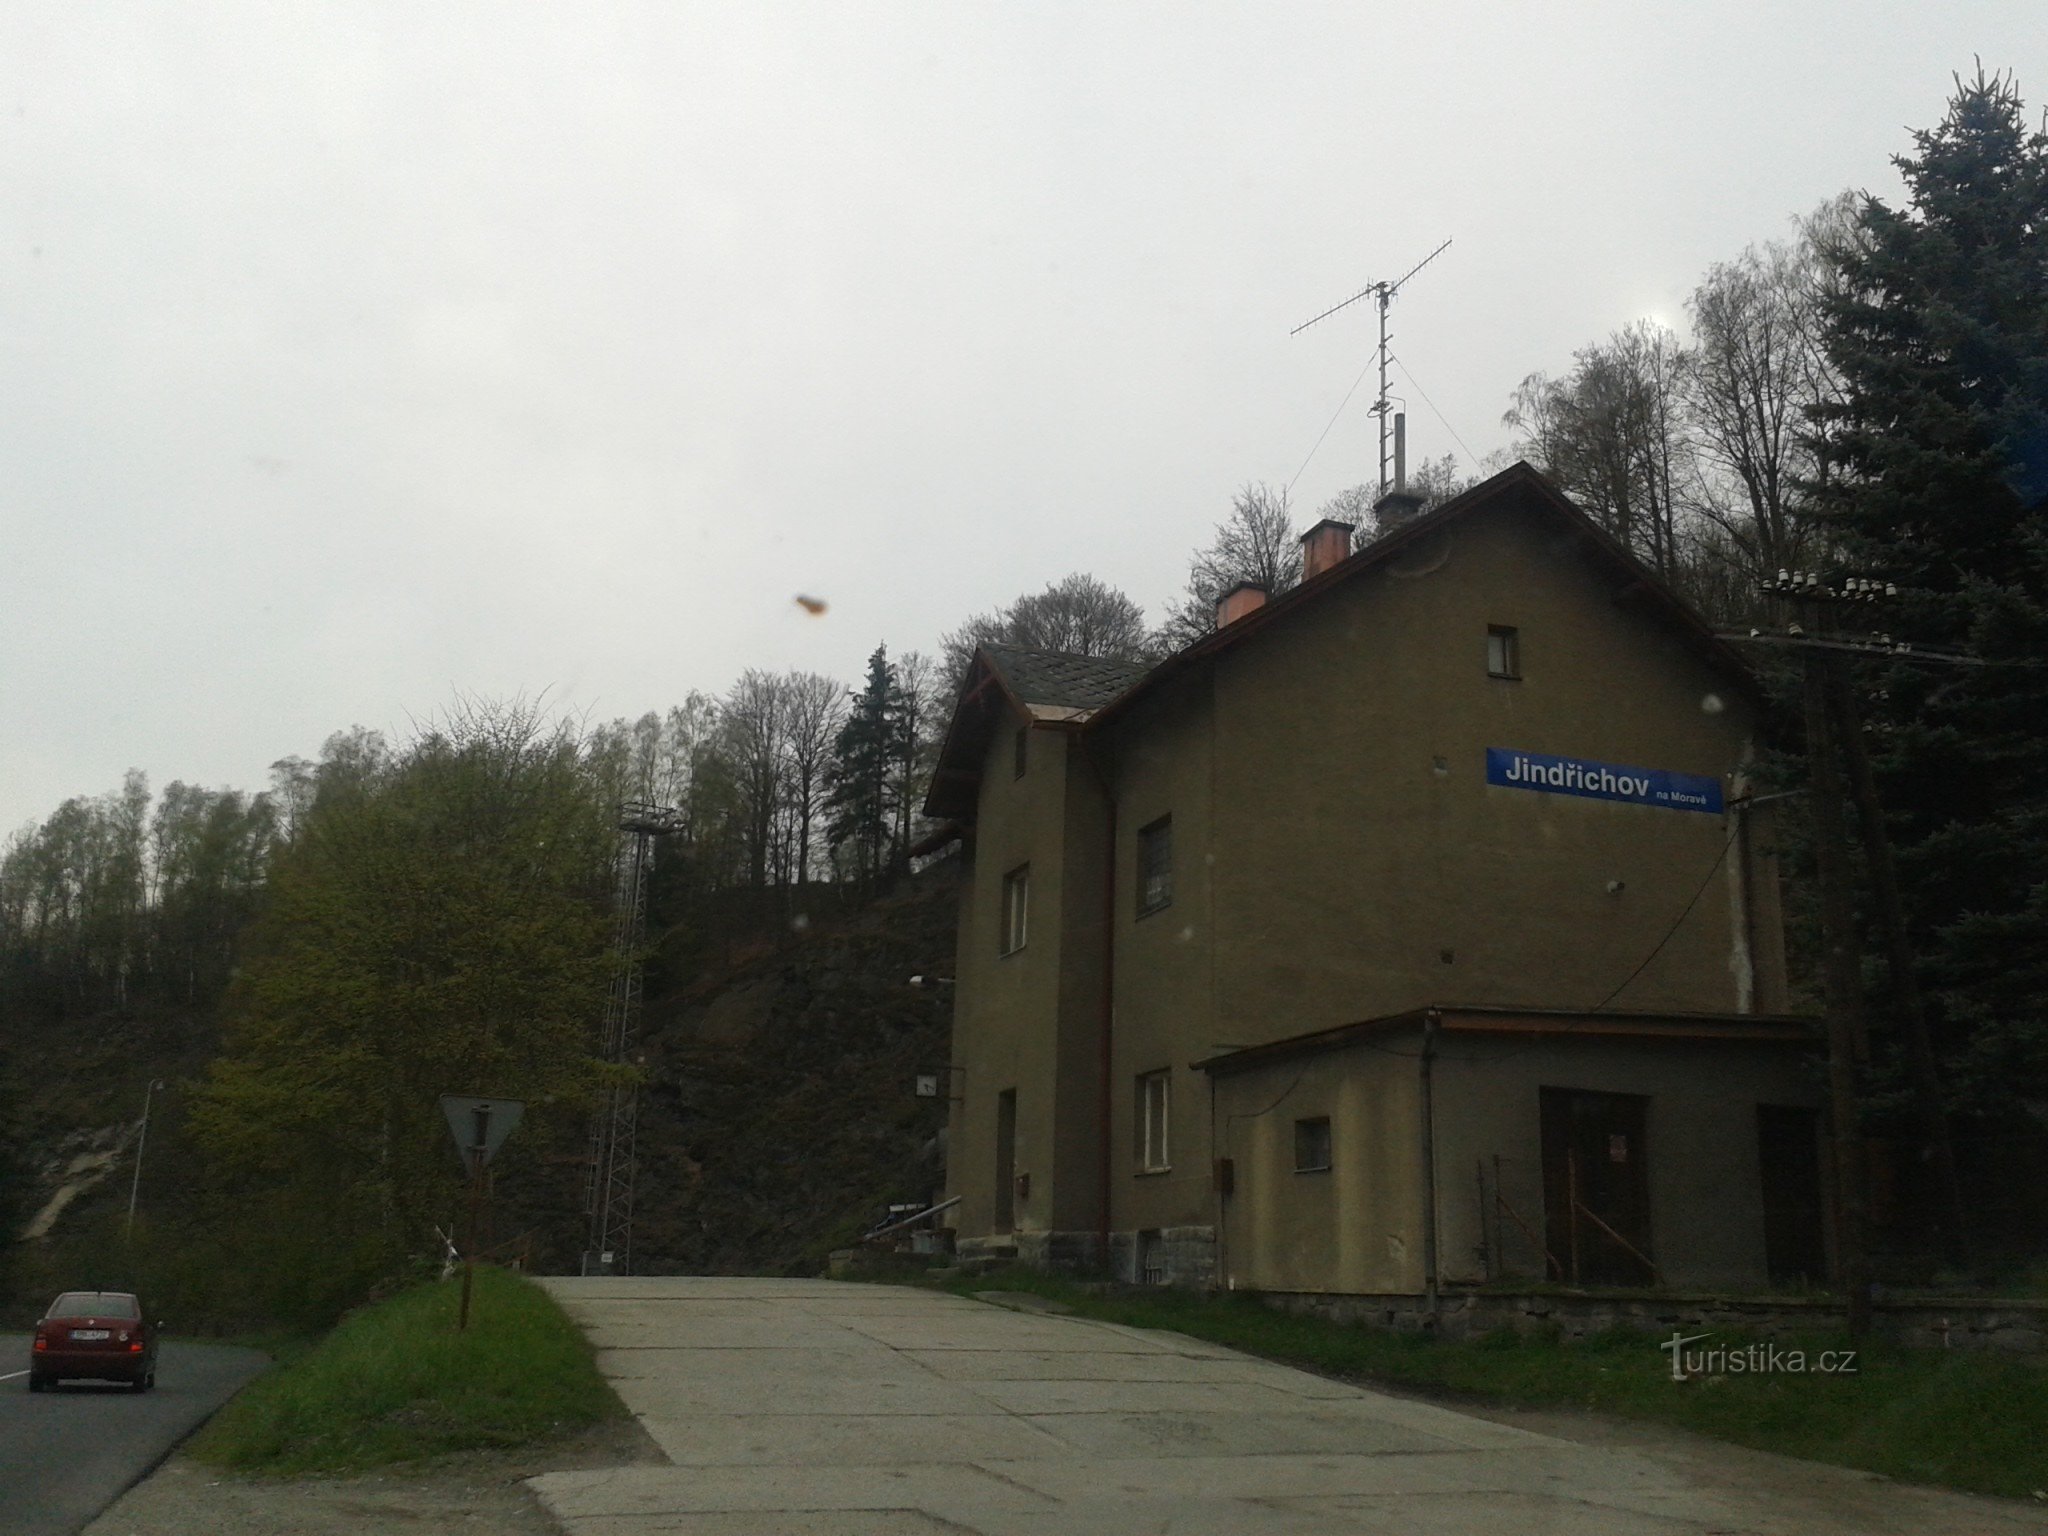 Jindřichov i Moravia - tidligere papirfabrik og jernbanestation, hvor tiden stod stille, Šumperk-distriktet